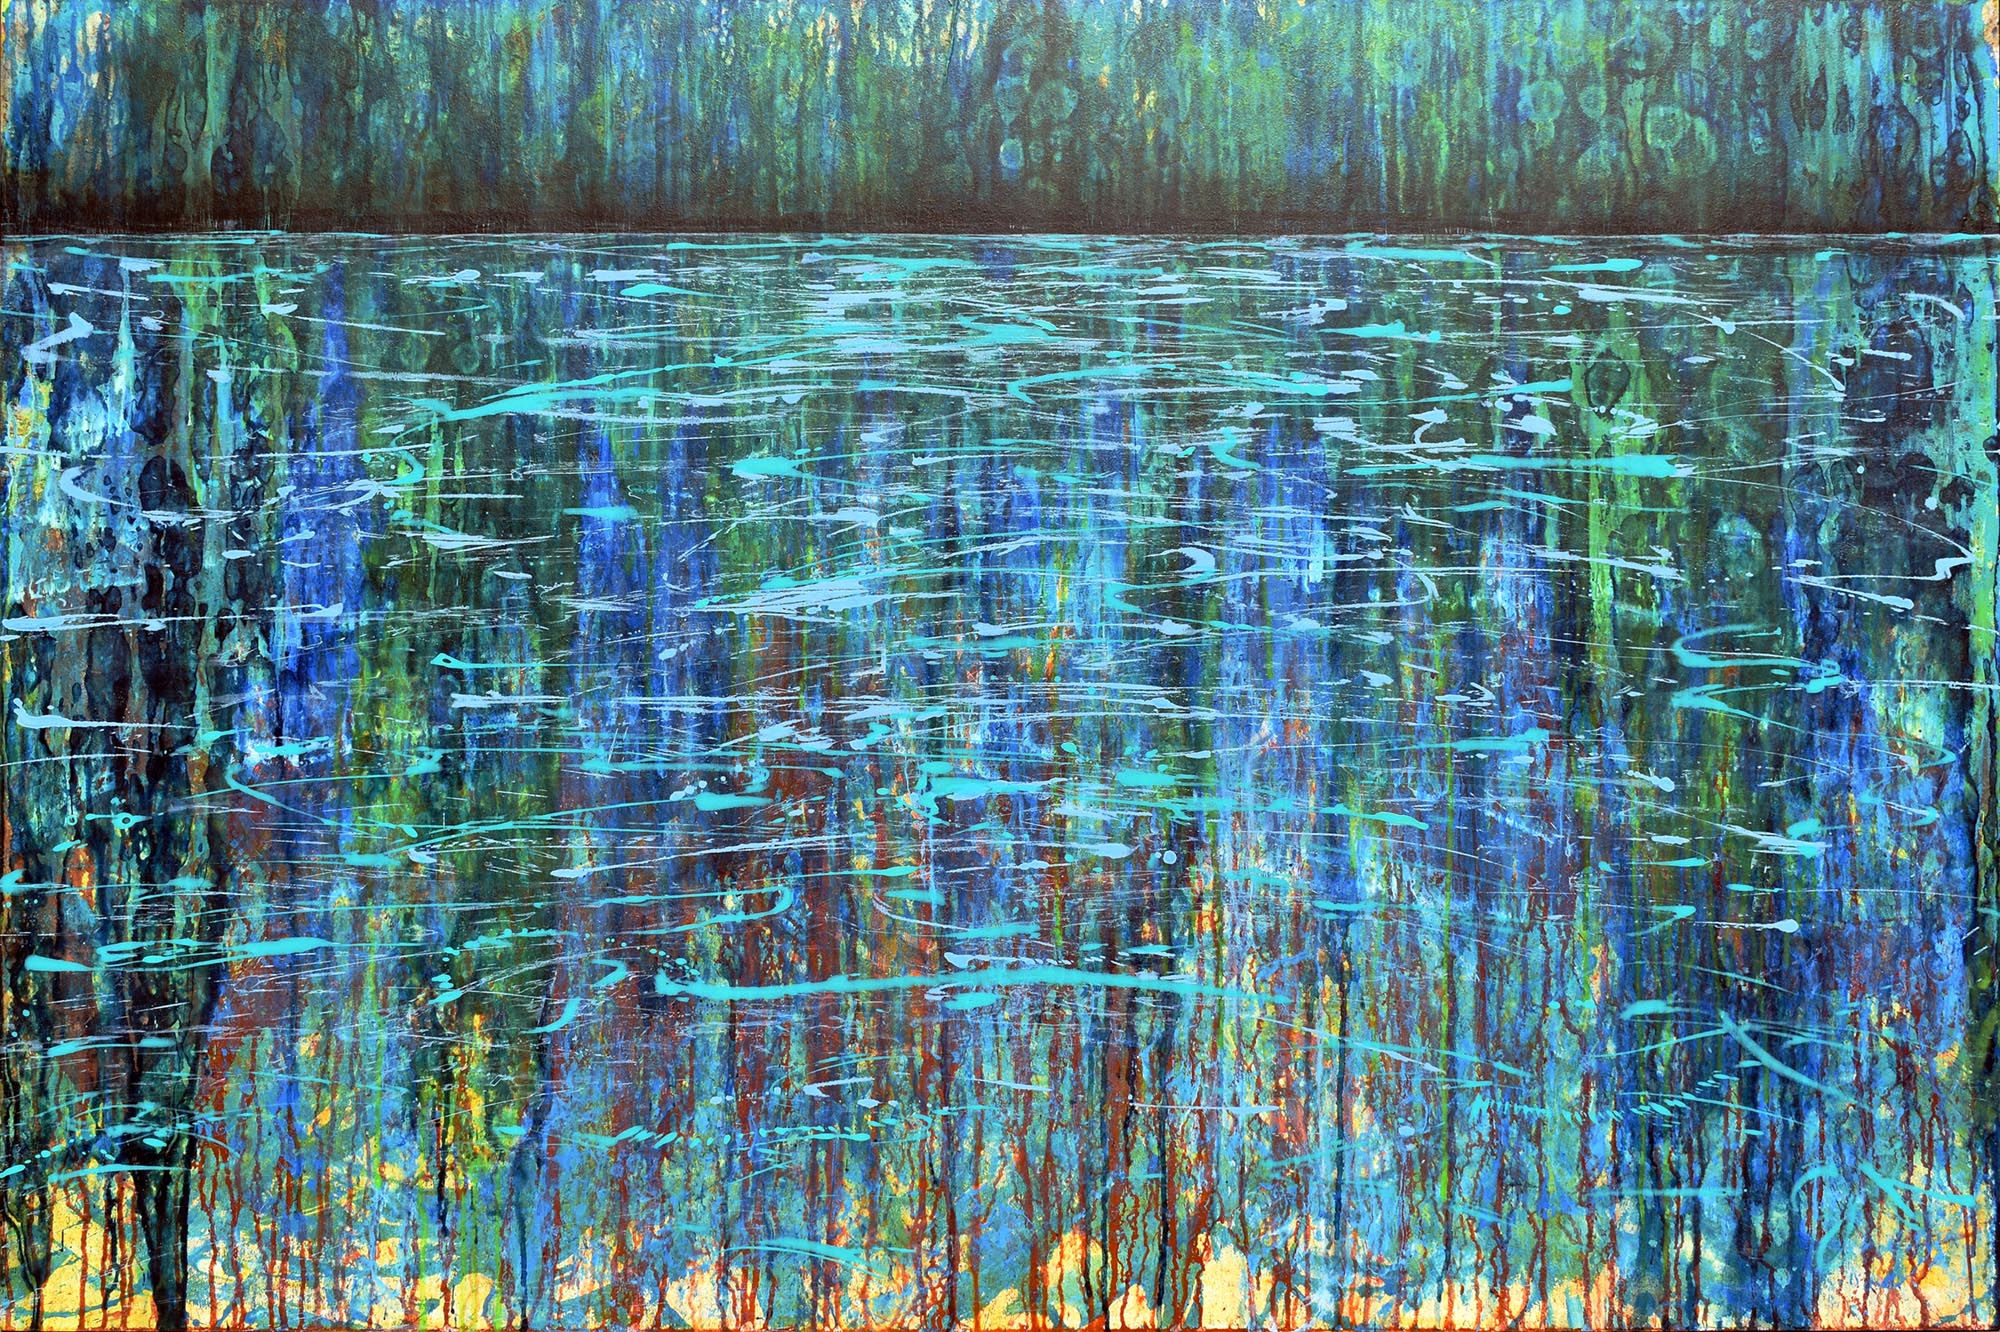 Reflexion auf Wasseroberfläche, blau, grün, türkis, Landschaft, See, Wald, Bild, Gemälde